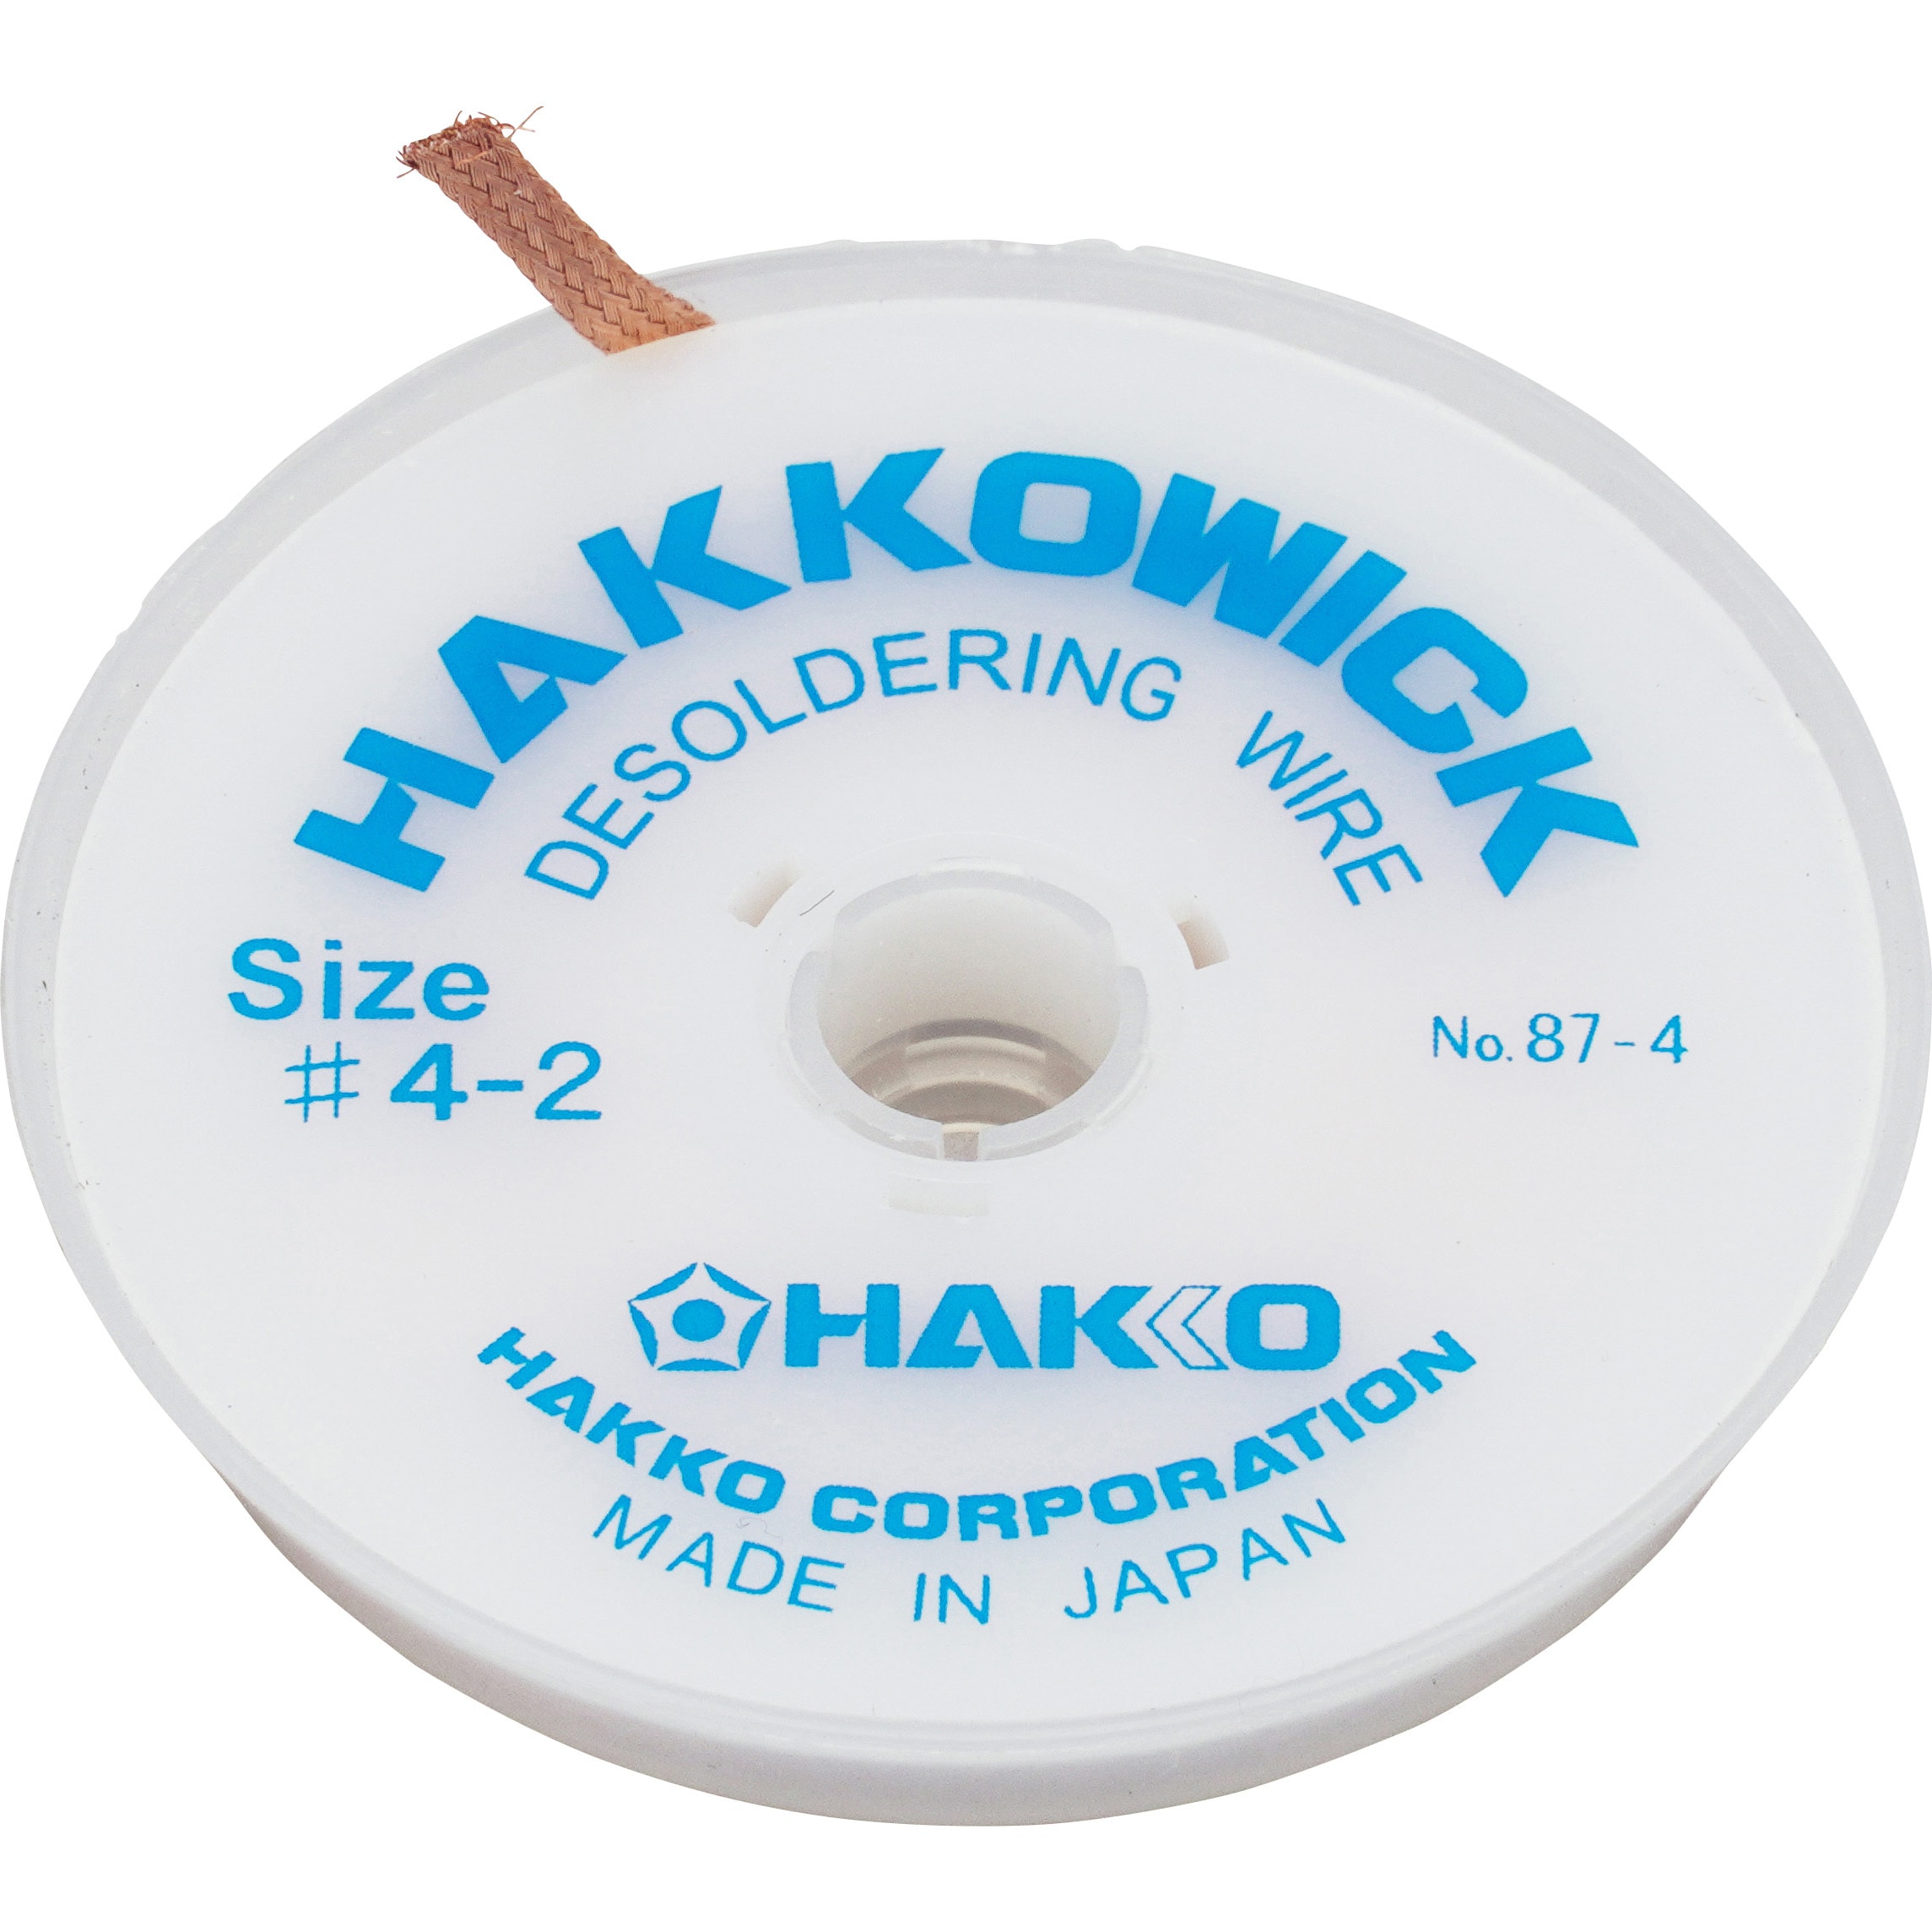 新着商品 白光 HAKKO はんだ吸取線 ウィック ノークリーン 3mm×2m 袋入り FR150-89